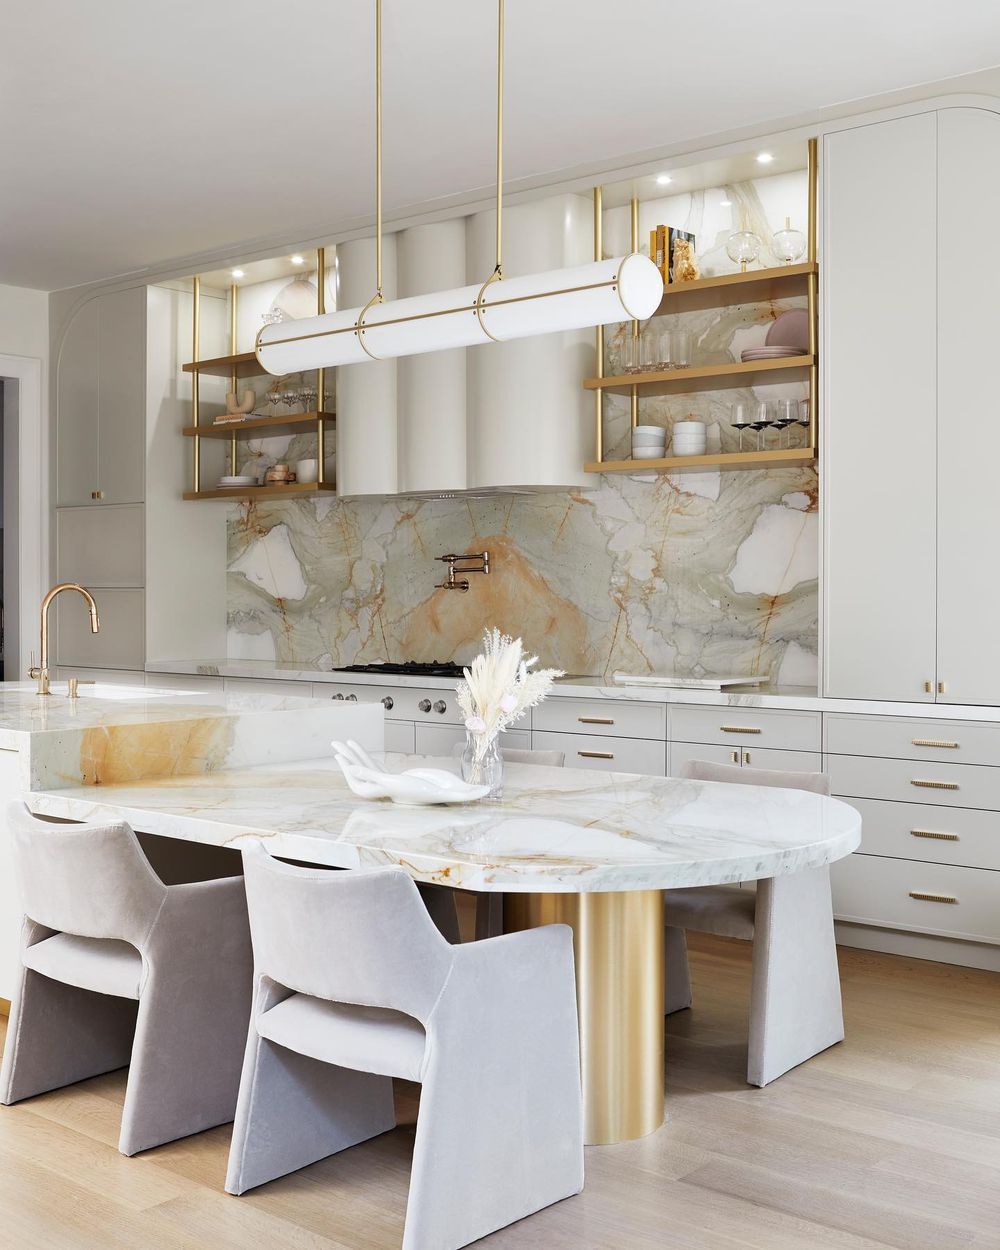 Contemporary kitchen design @erica_gelman